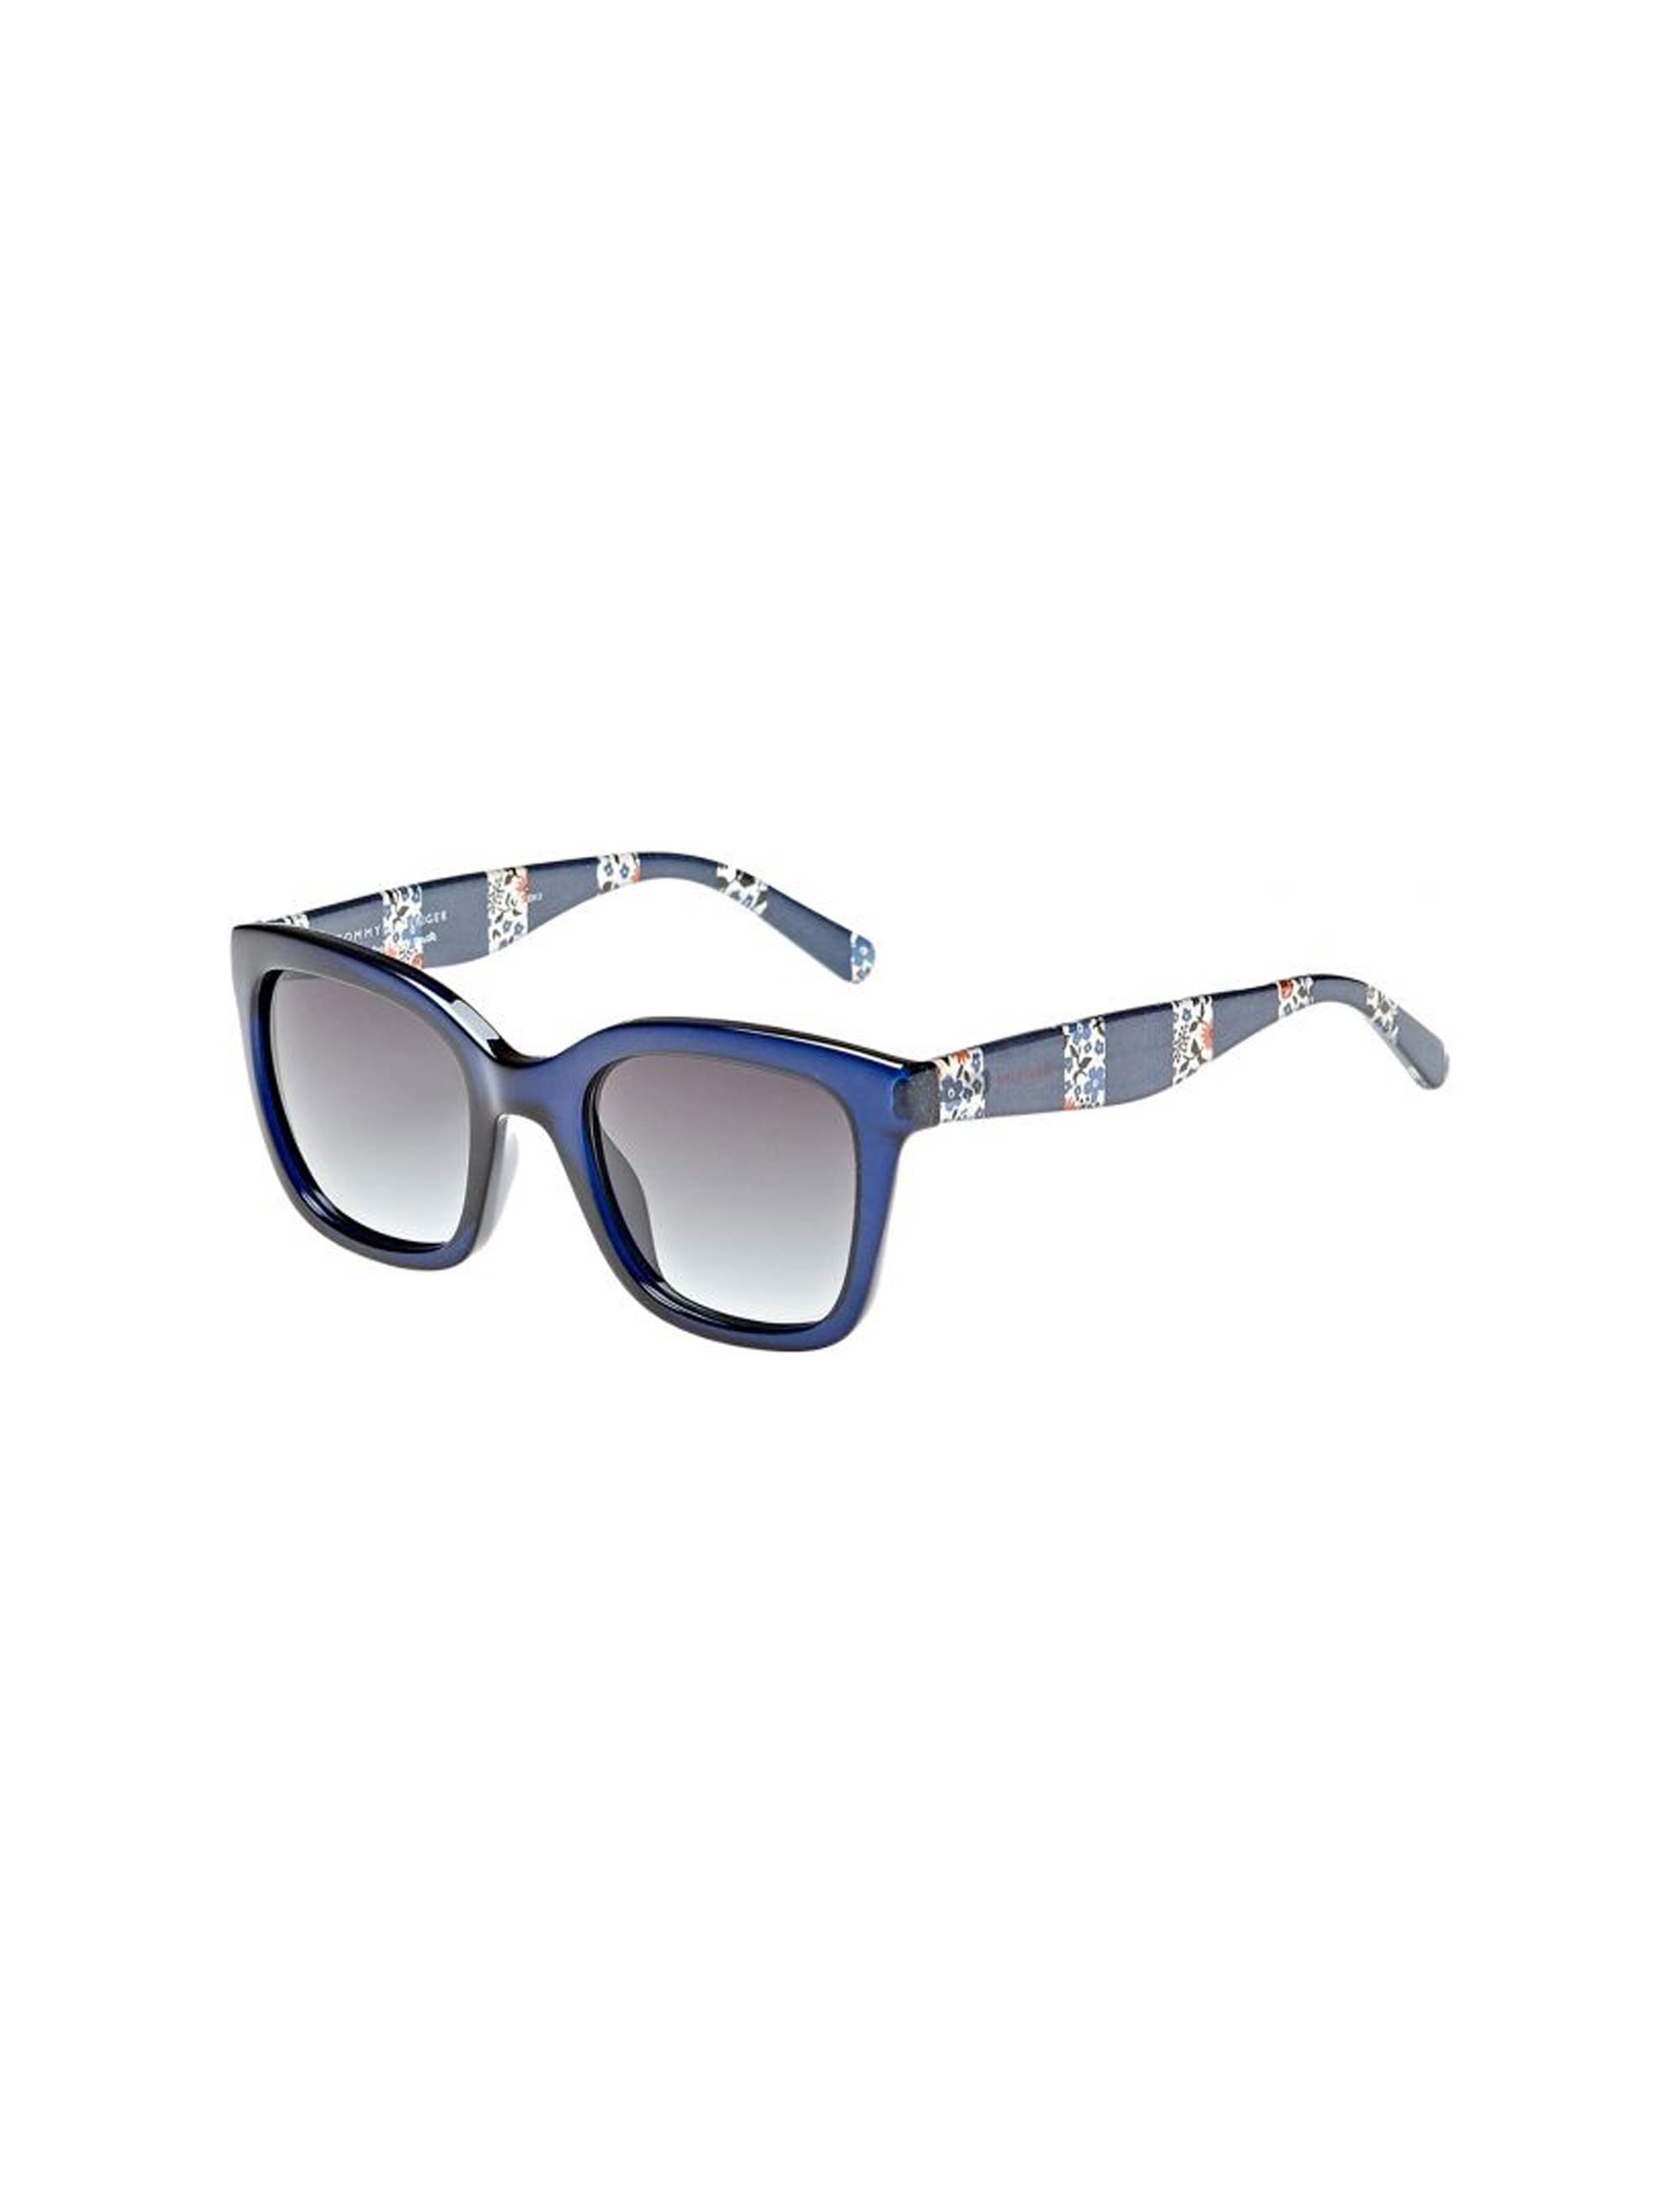 عینک آفتابی مربعی زنانه - تامی هیلفیگر - آبي - 1